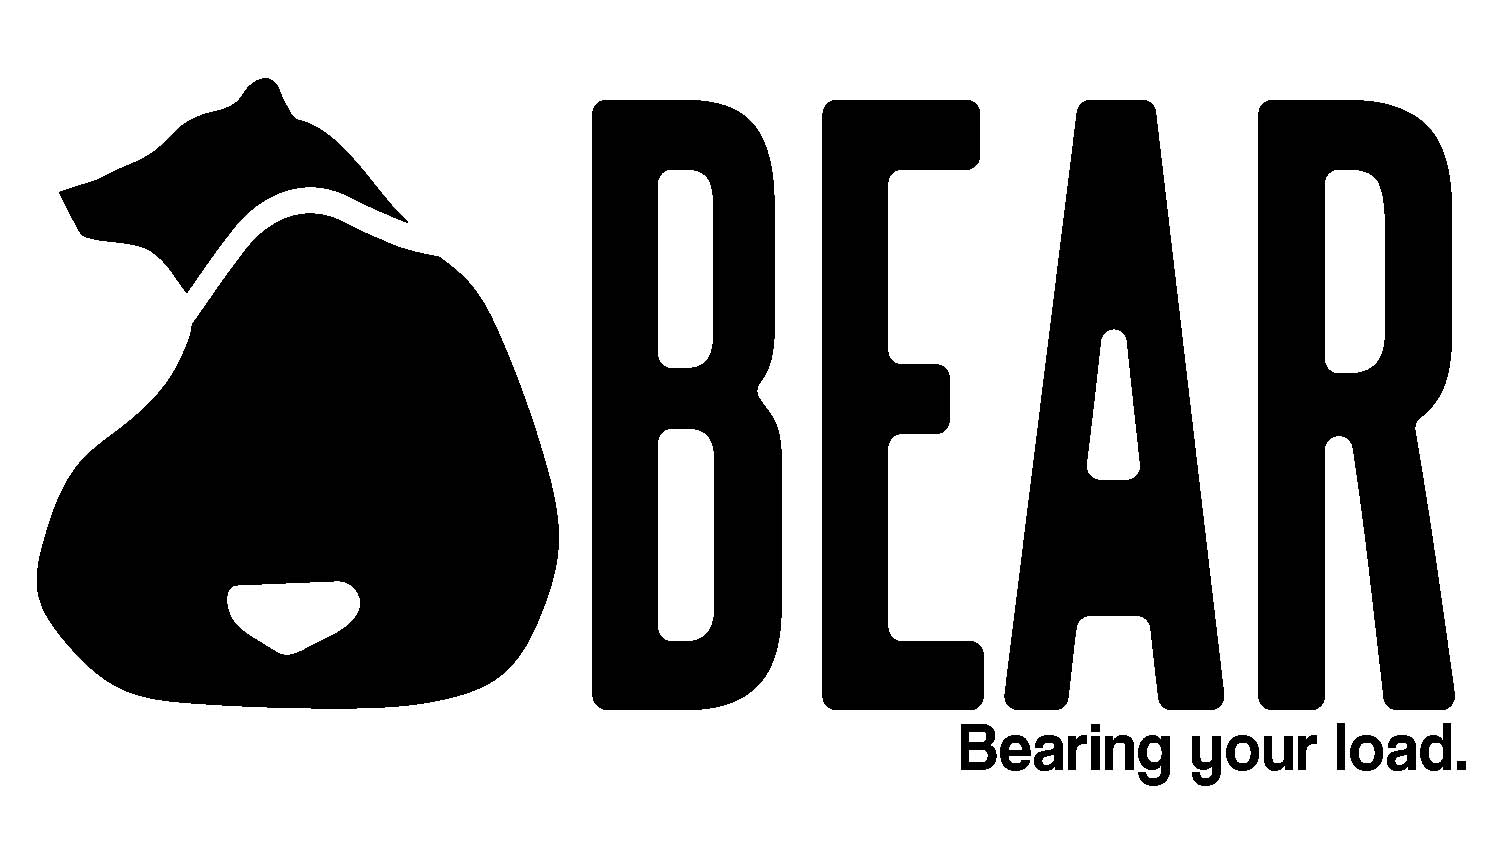 Bearfamily logo